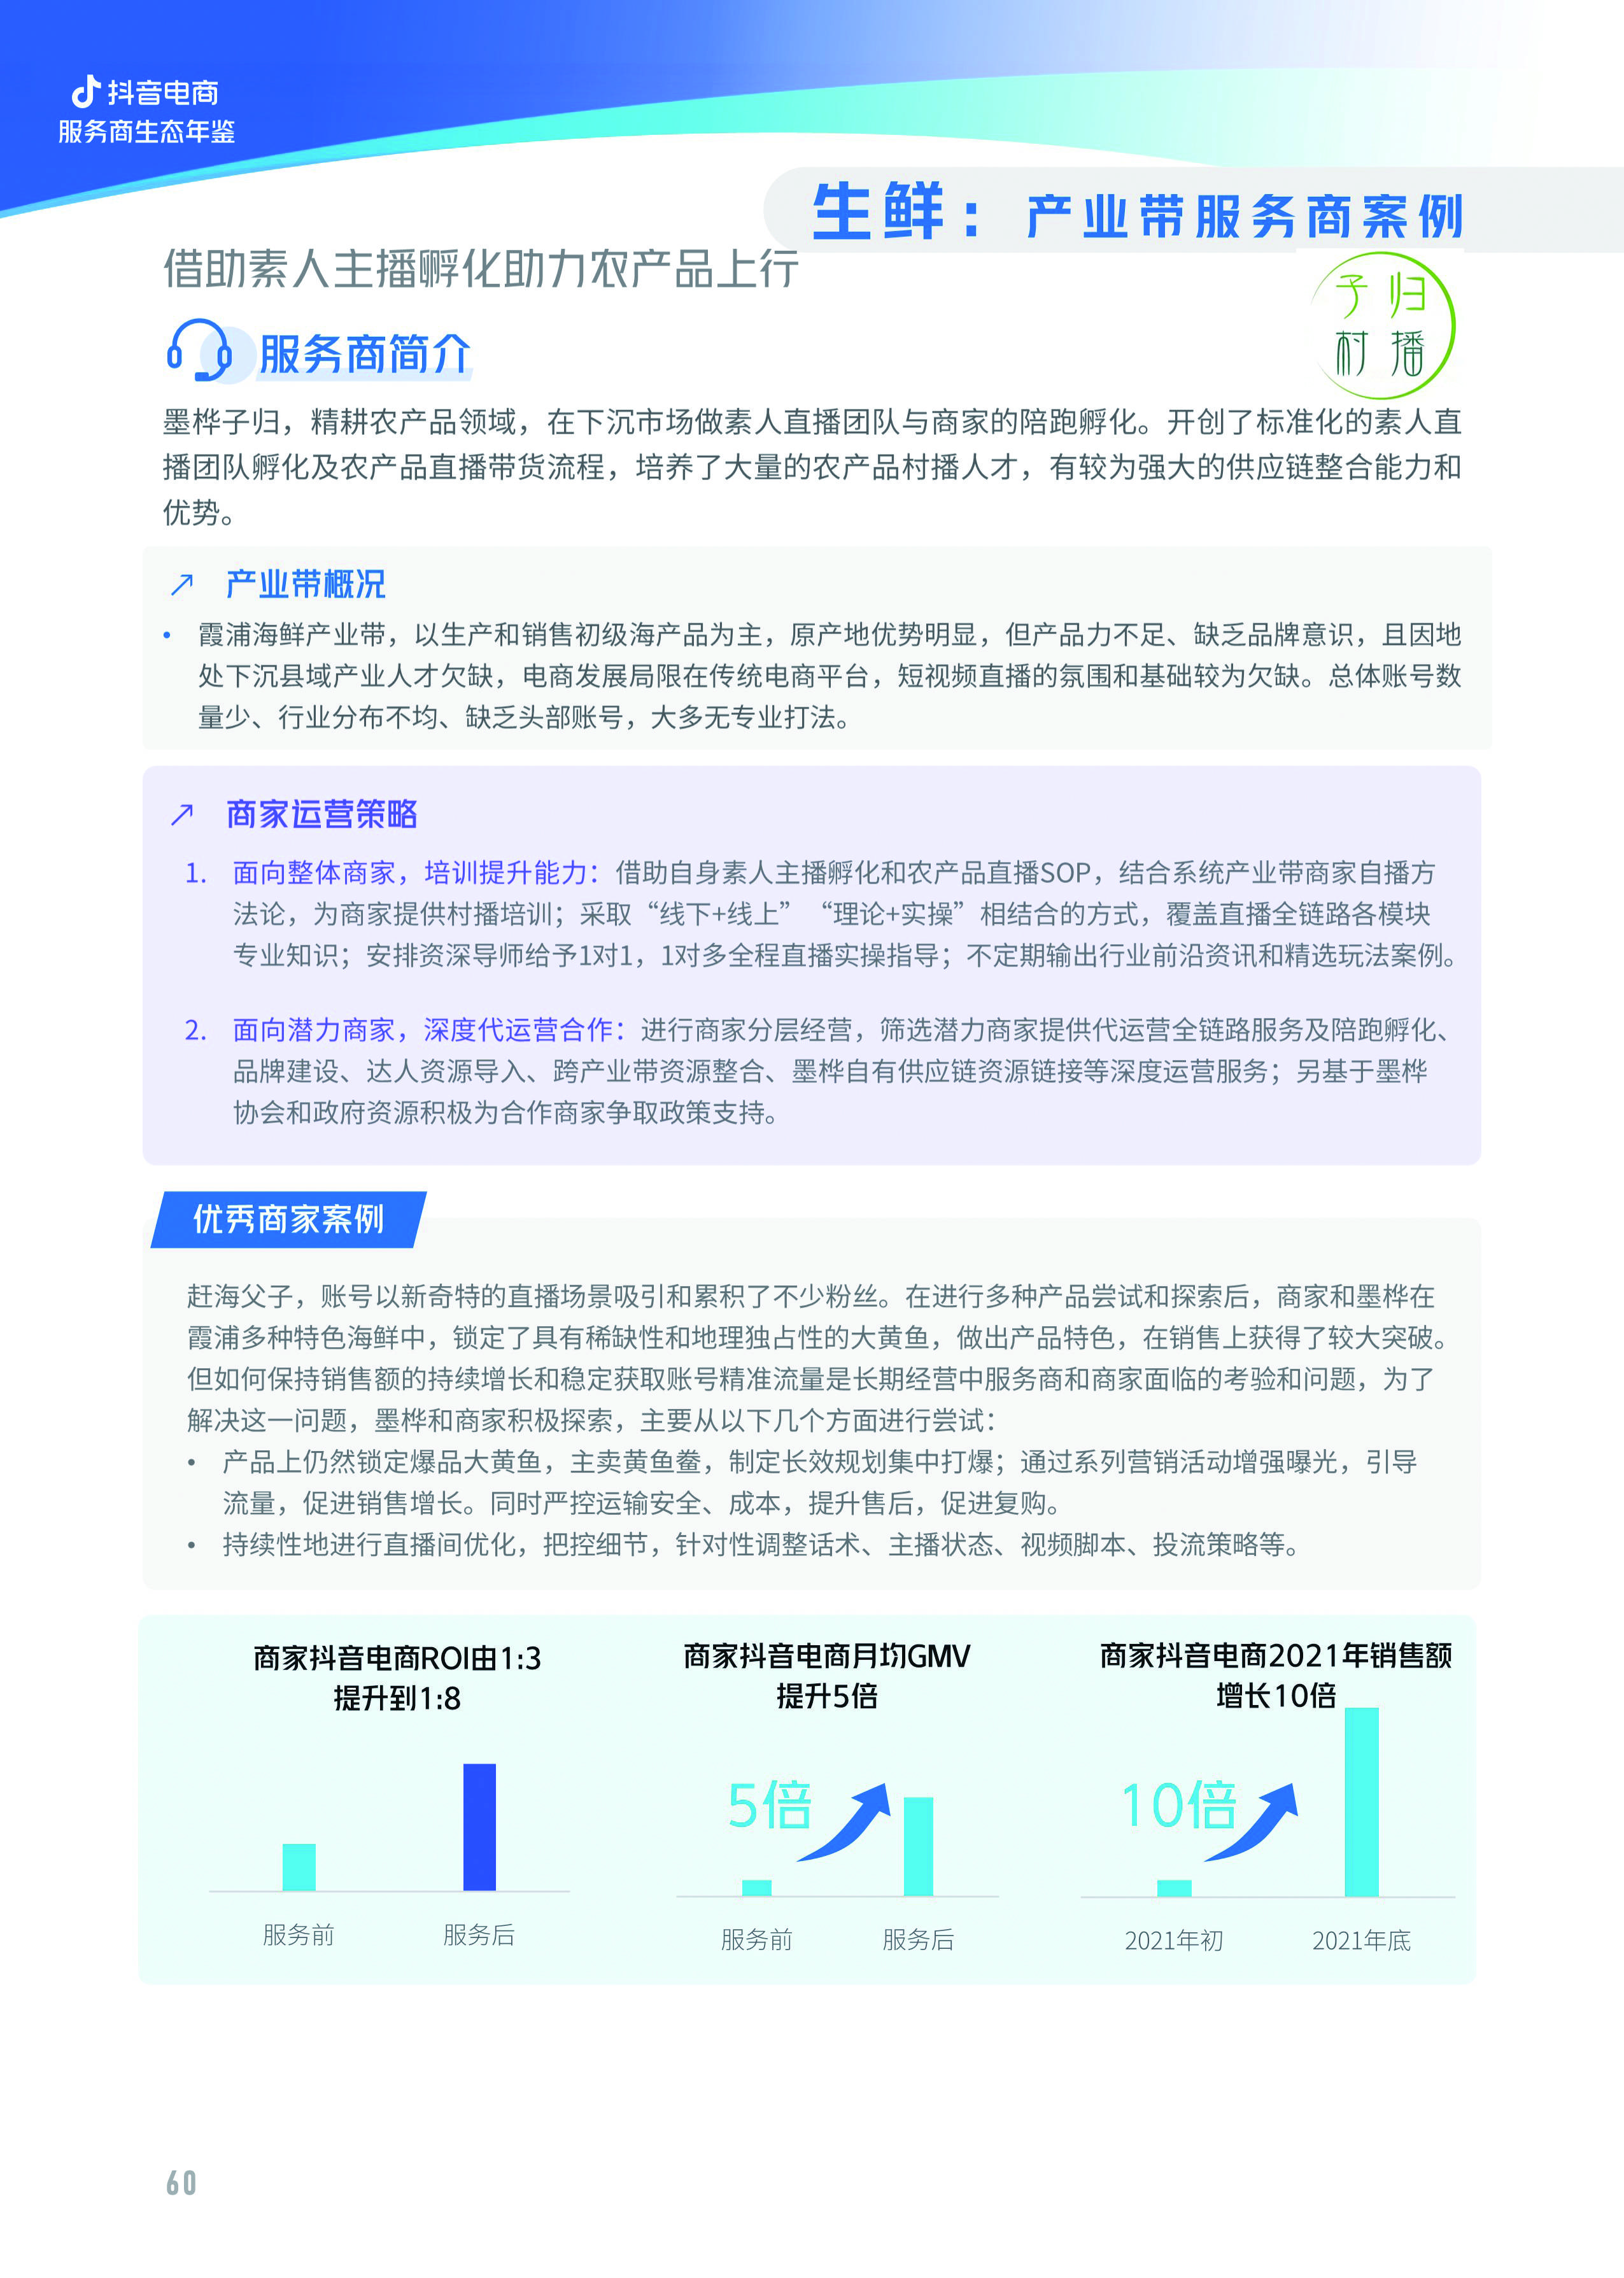 亿邦智库与抖音电商联合发布《2022抖音电商服务商生态年鉴》